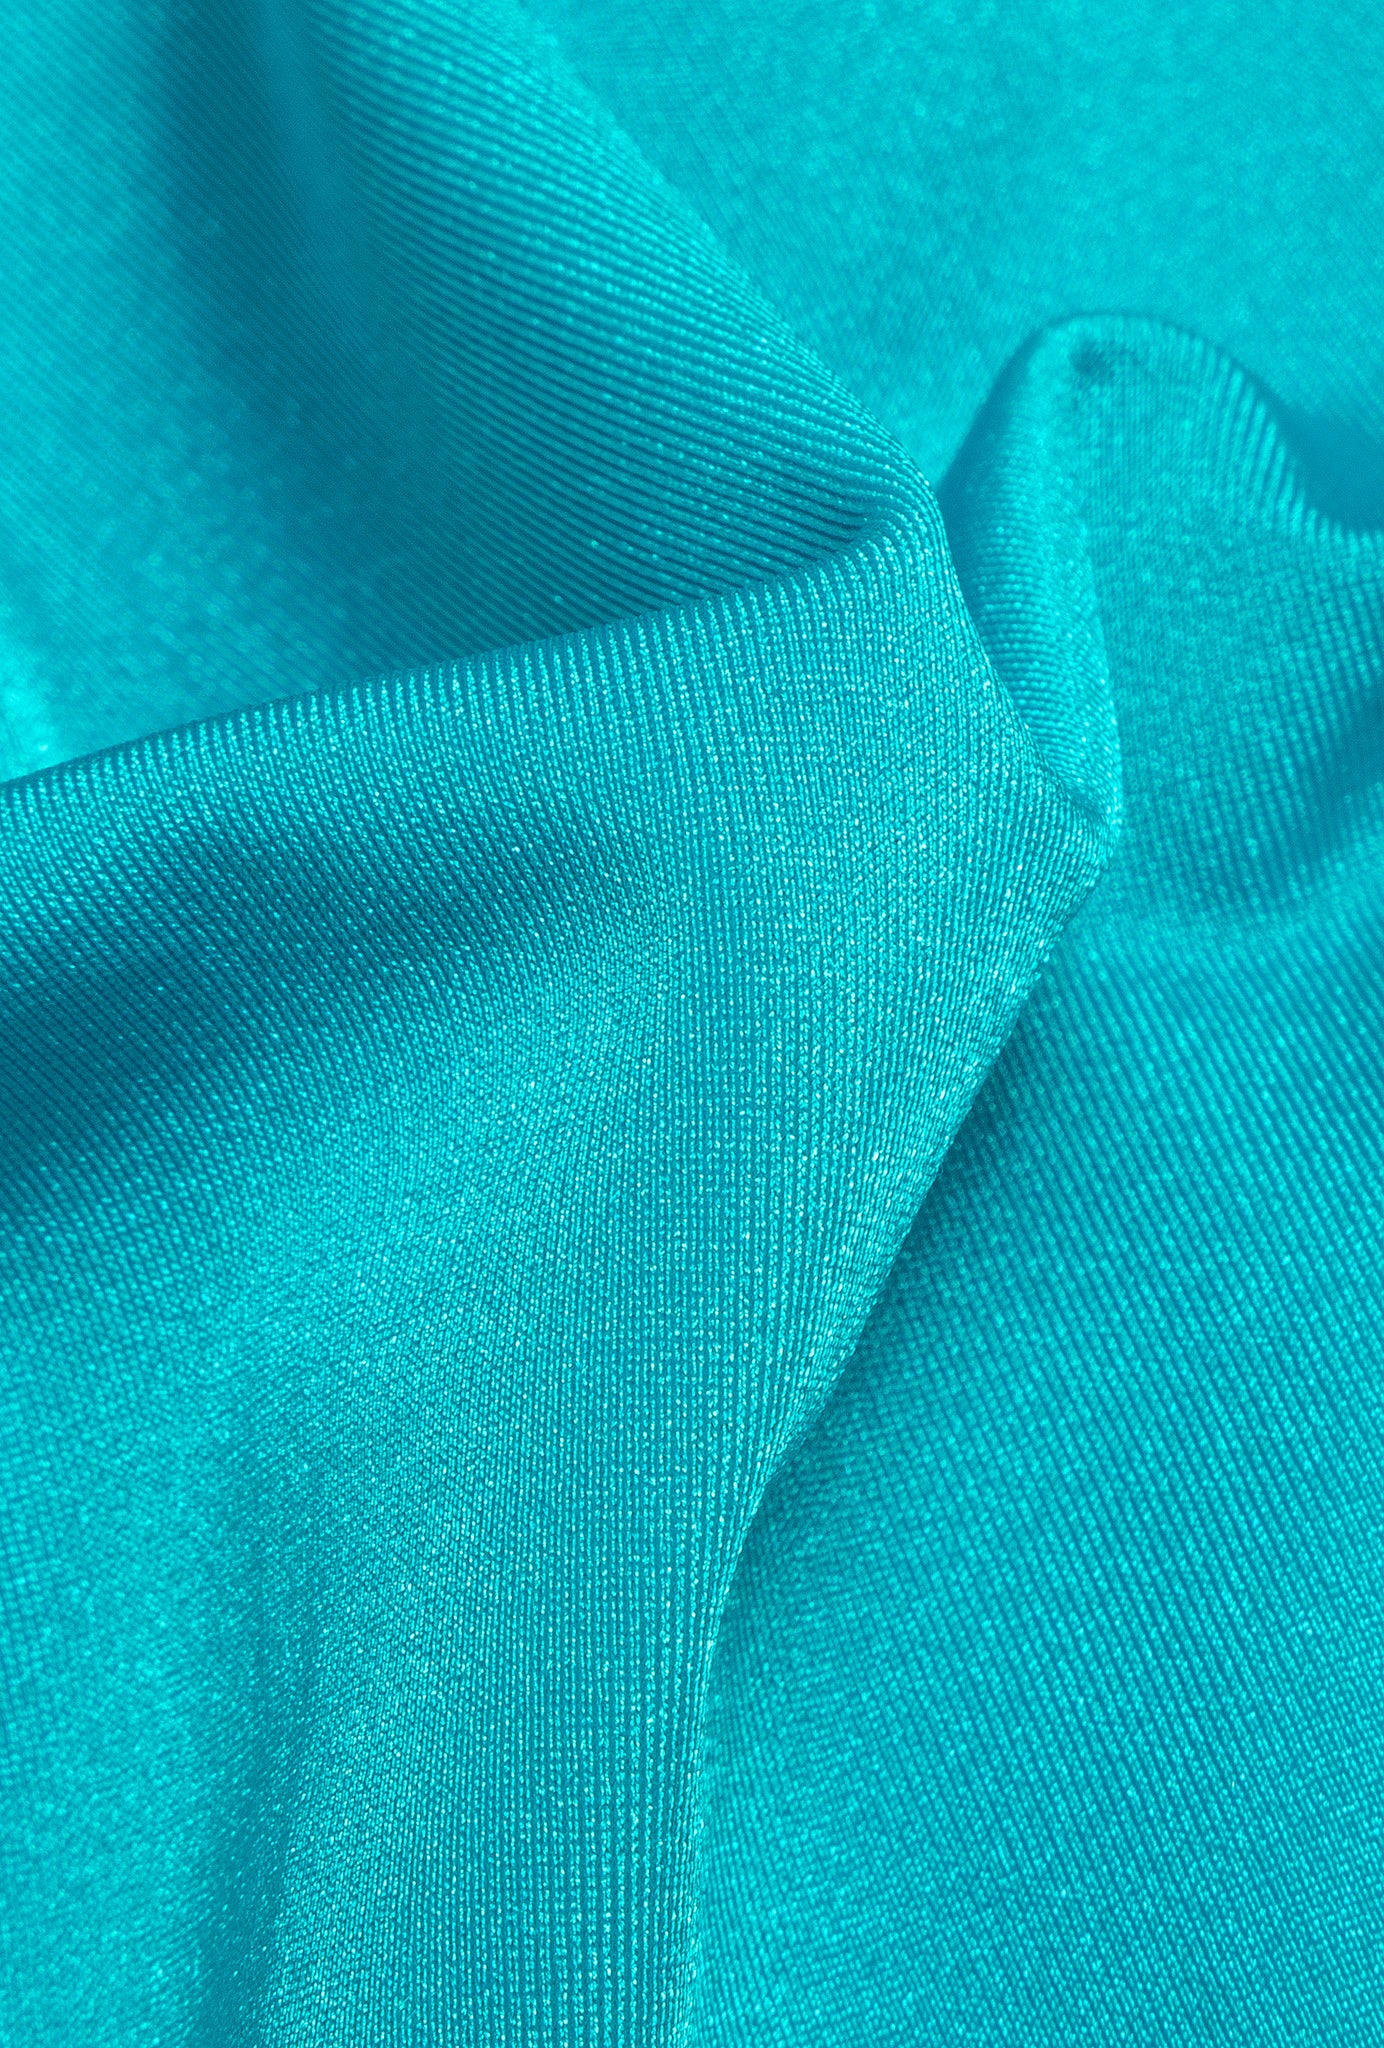 Olympus bodysuit turquoise